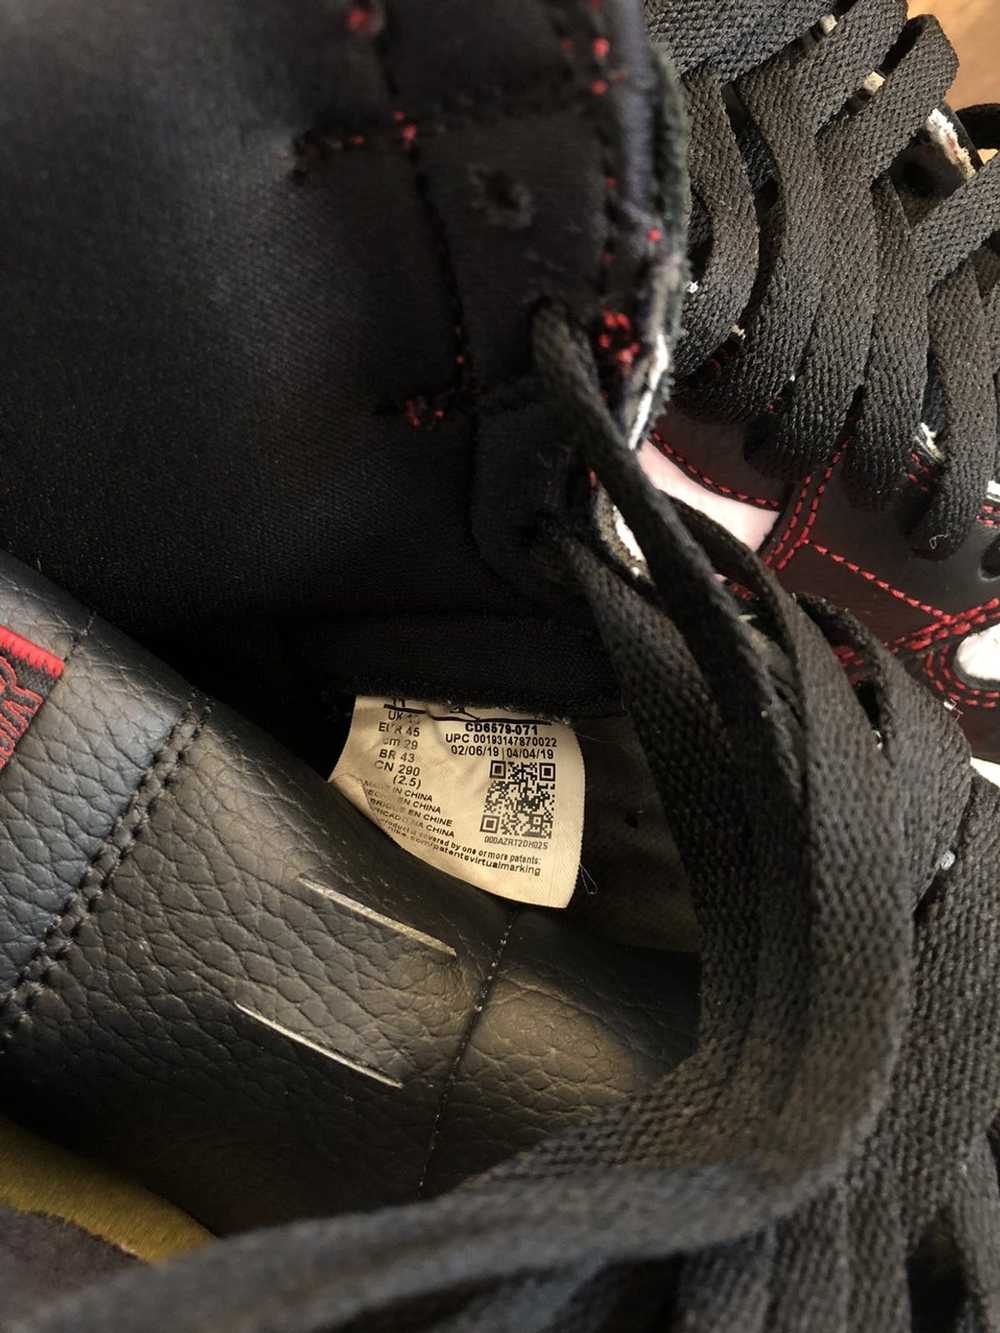 Jordan Brand × Nike Air Jordan High OG Defiant - image 6